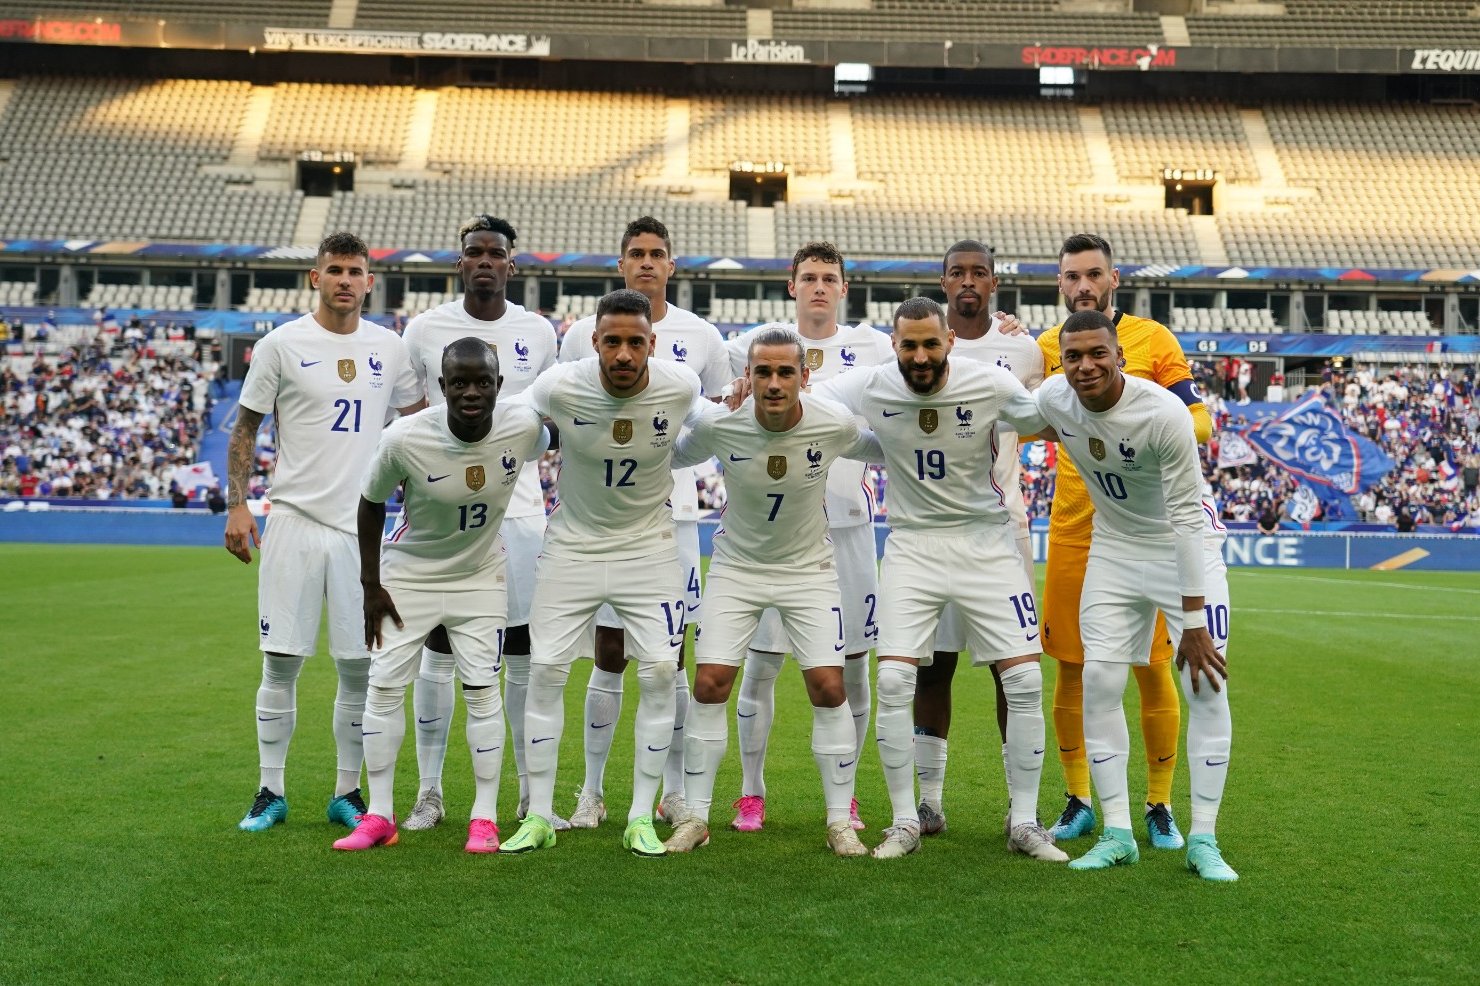 Ֆրանսիայի հավաքականի 2 առանցքային ֆուտբոլիստ ընդհանուր խմբից առանձին են մարզվել - Ֆրանսիայի հավաքականի 2 առանցքային ֆուտբոլիստ ընդհանուր խմբից առանձին է մարզվել